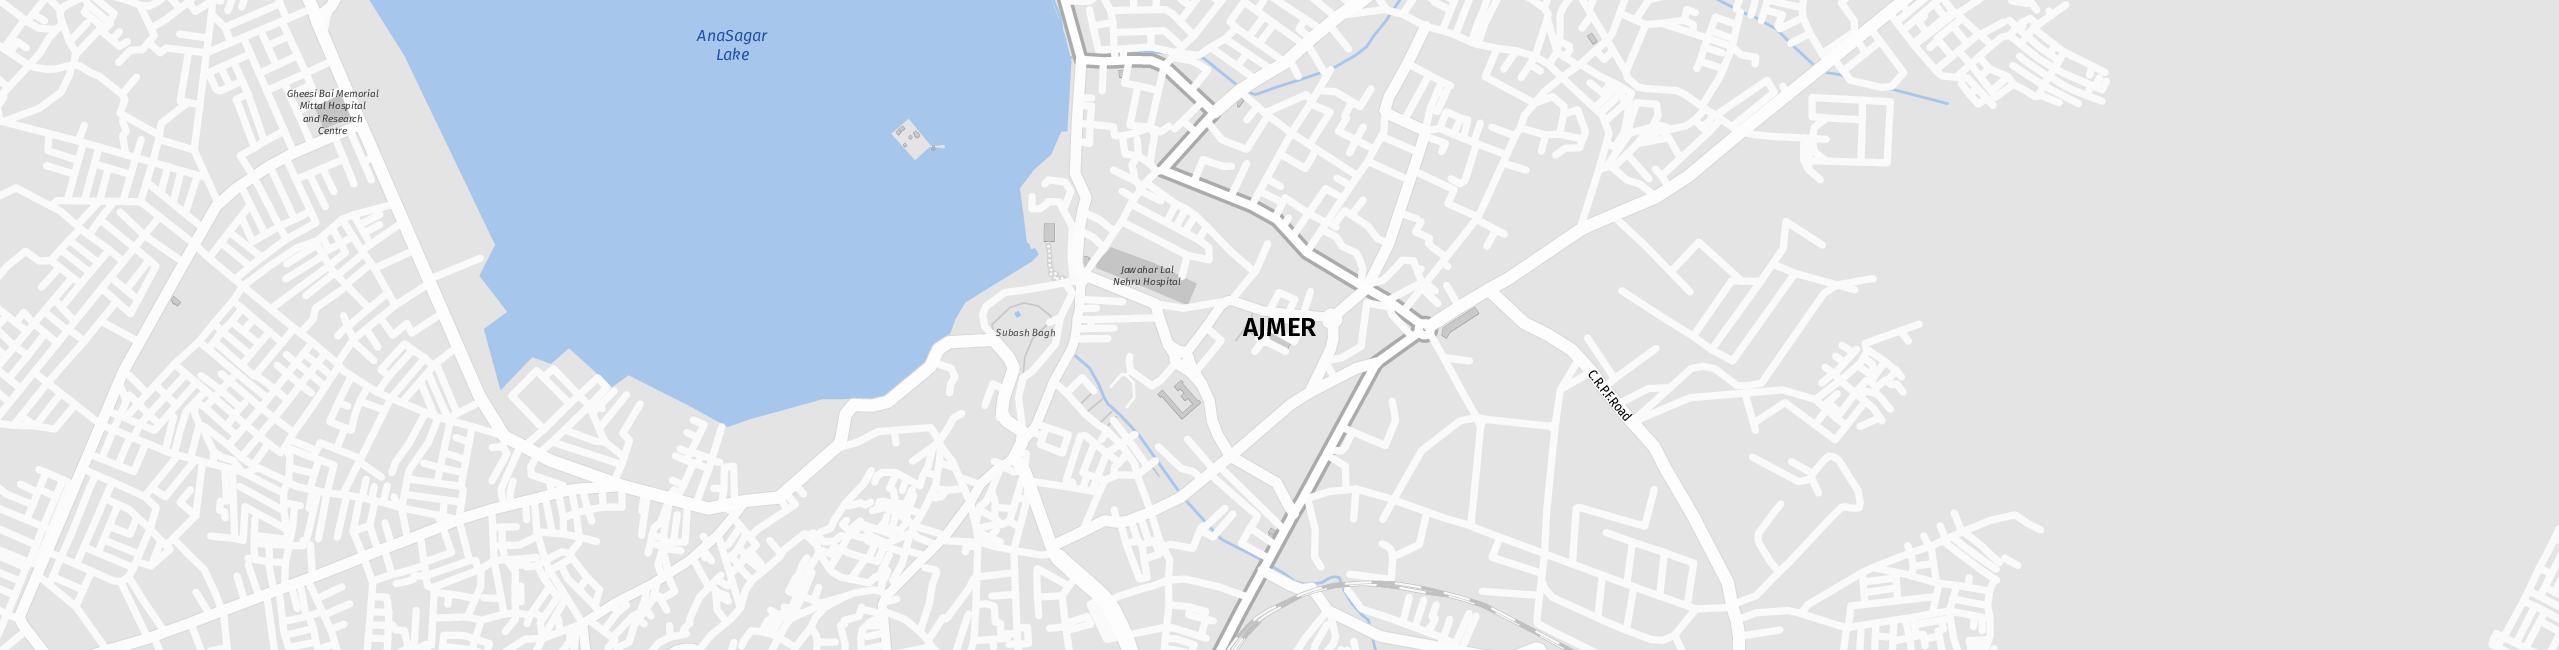 Stadtplan Ajmer zum Downloaden.